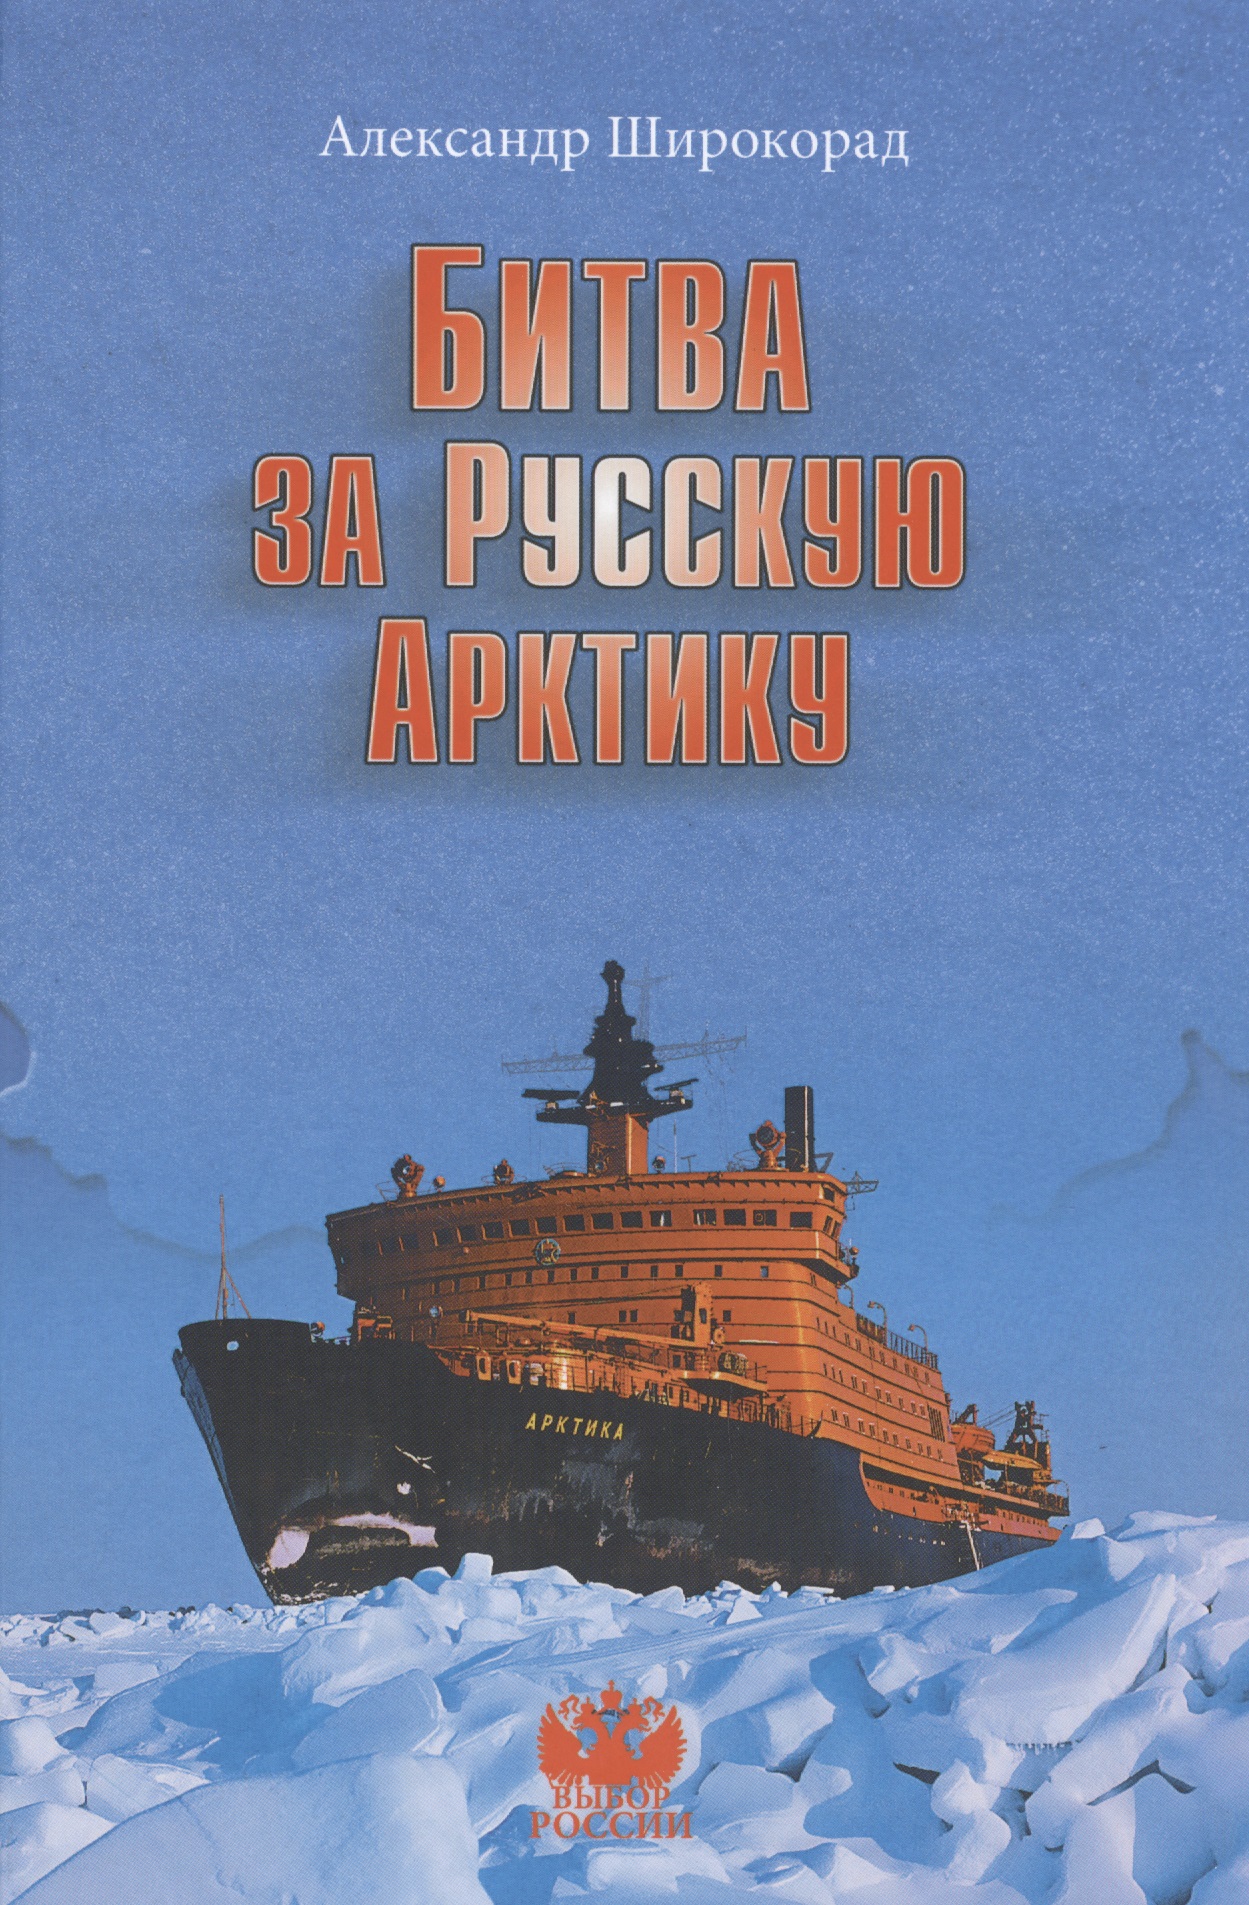 Широкорад Александр Борисович - Битва за Русскую Арктику